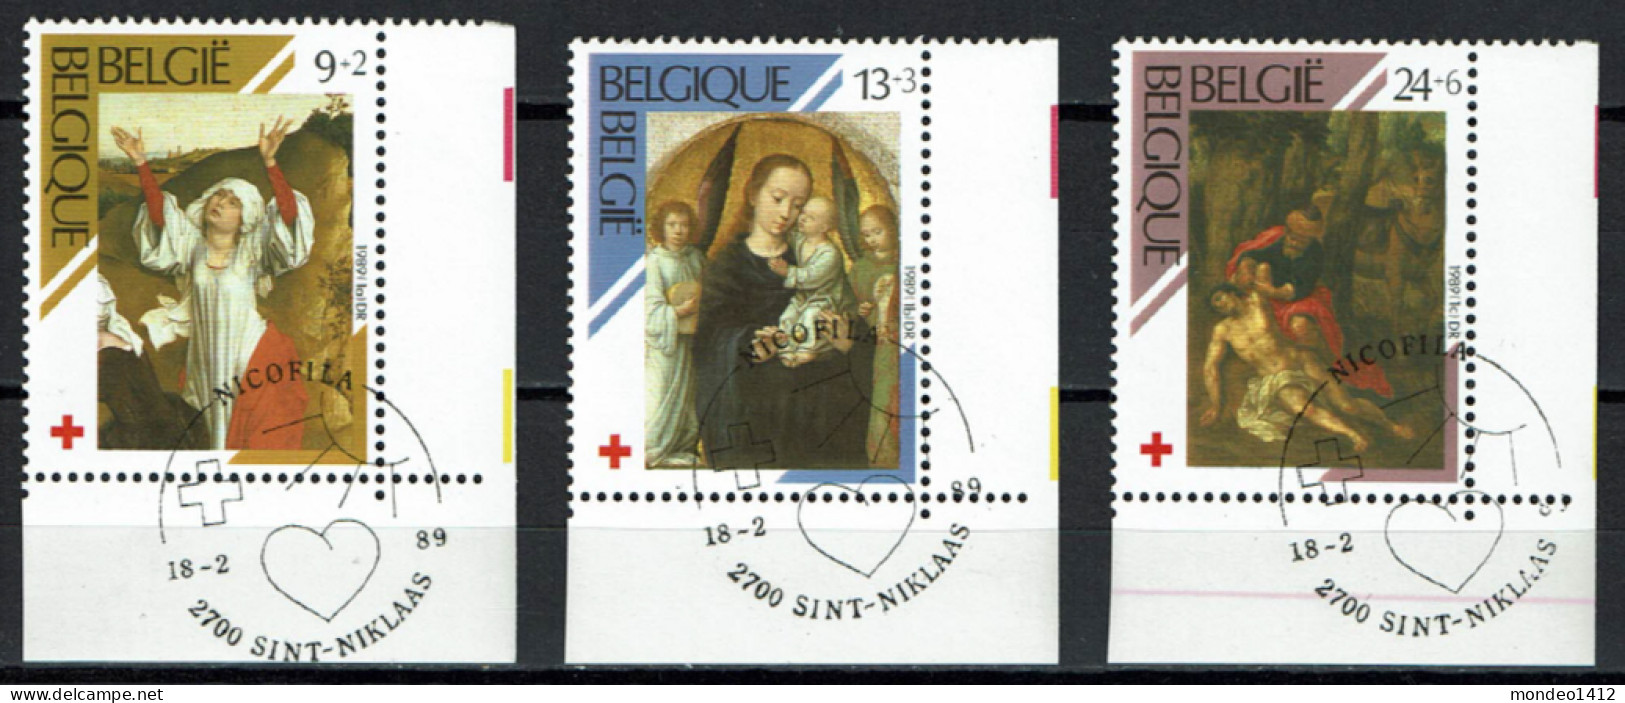 België 1989 OBP 2312/14 - Croix Rouge, Red Cross - Schilderij, Painting, Tableau - Bonne Valeur - Gebruikt